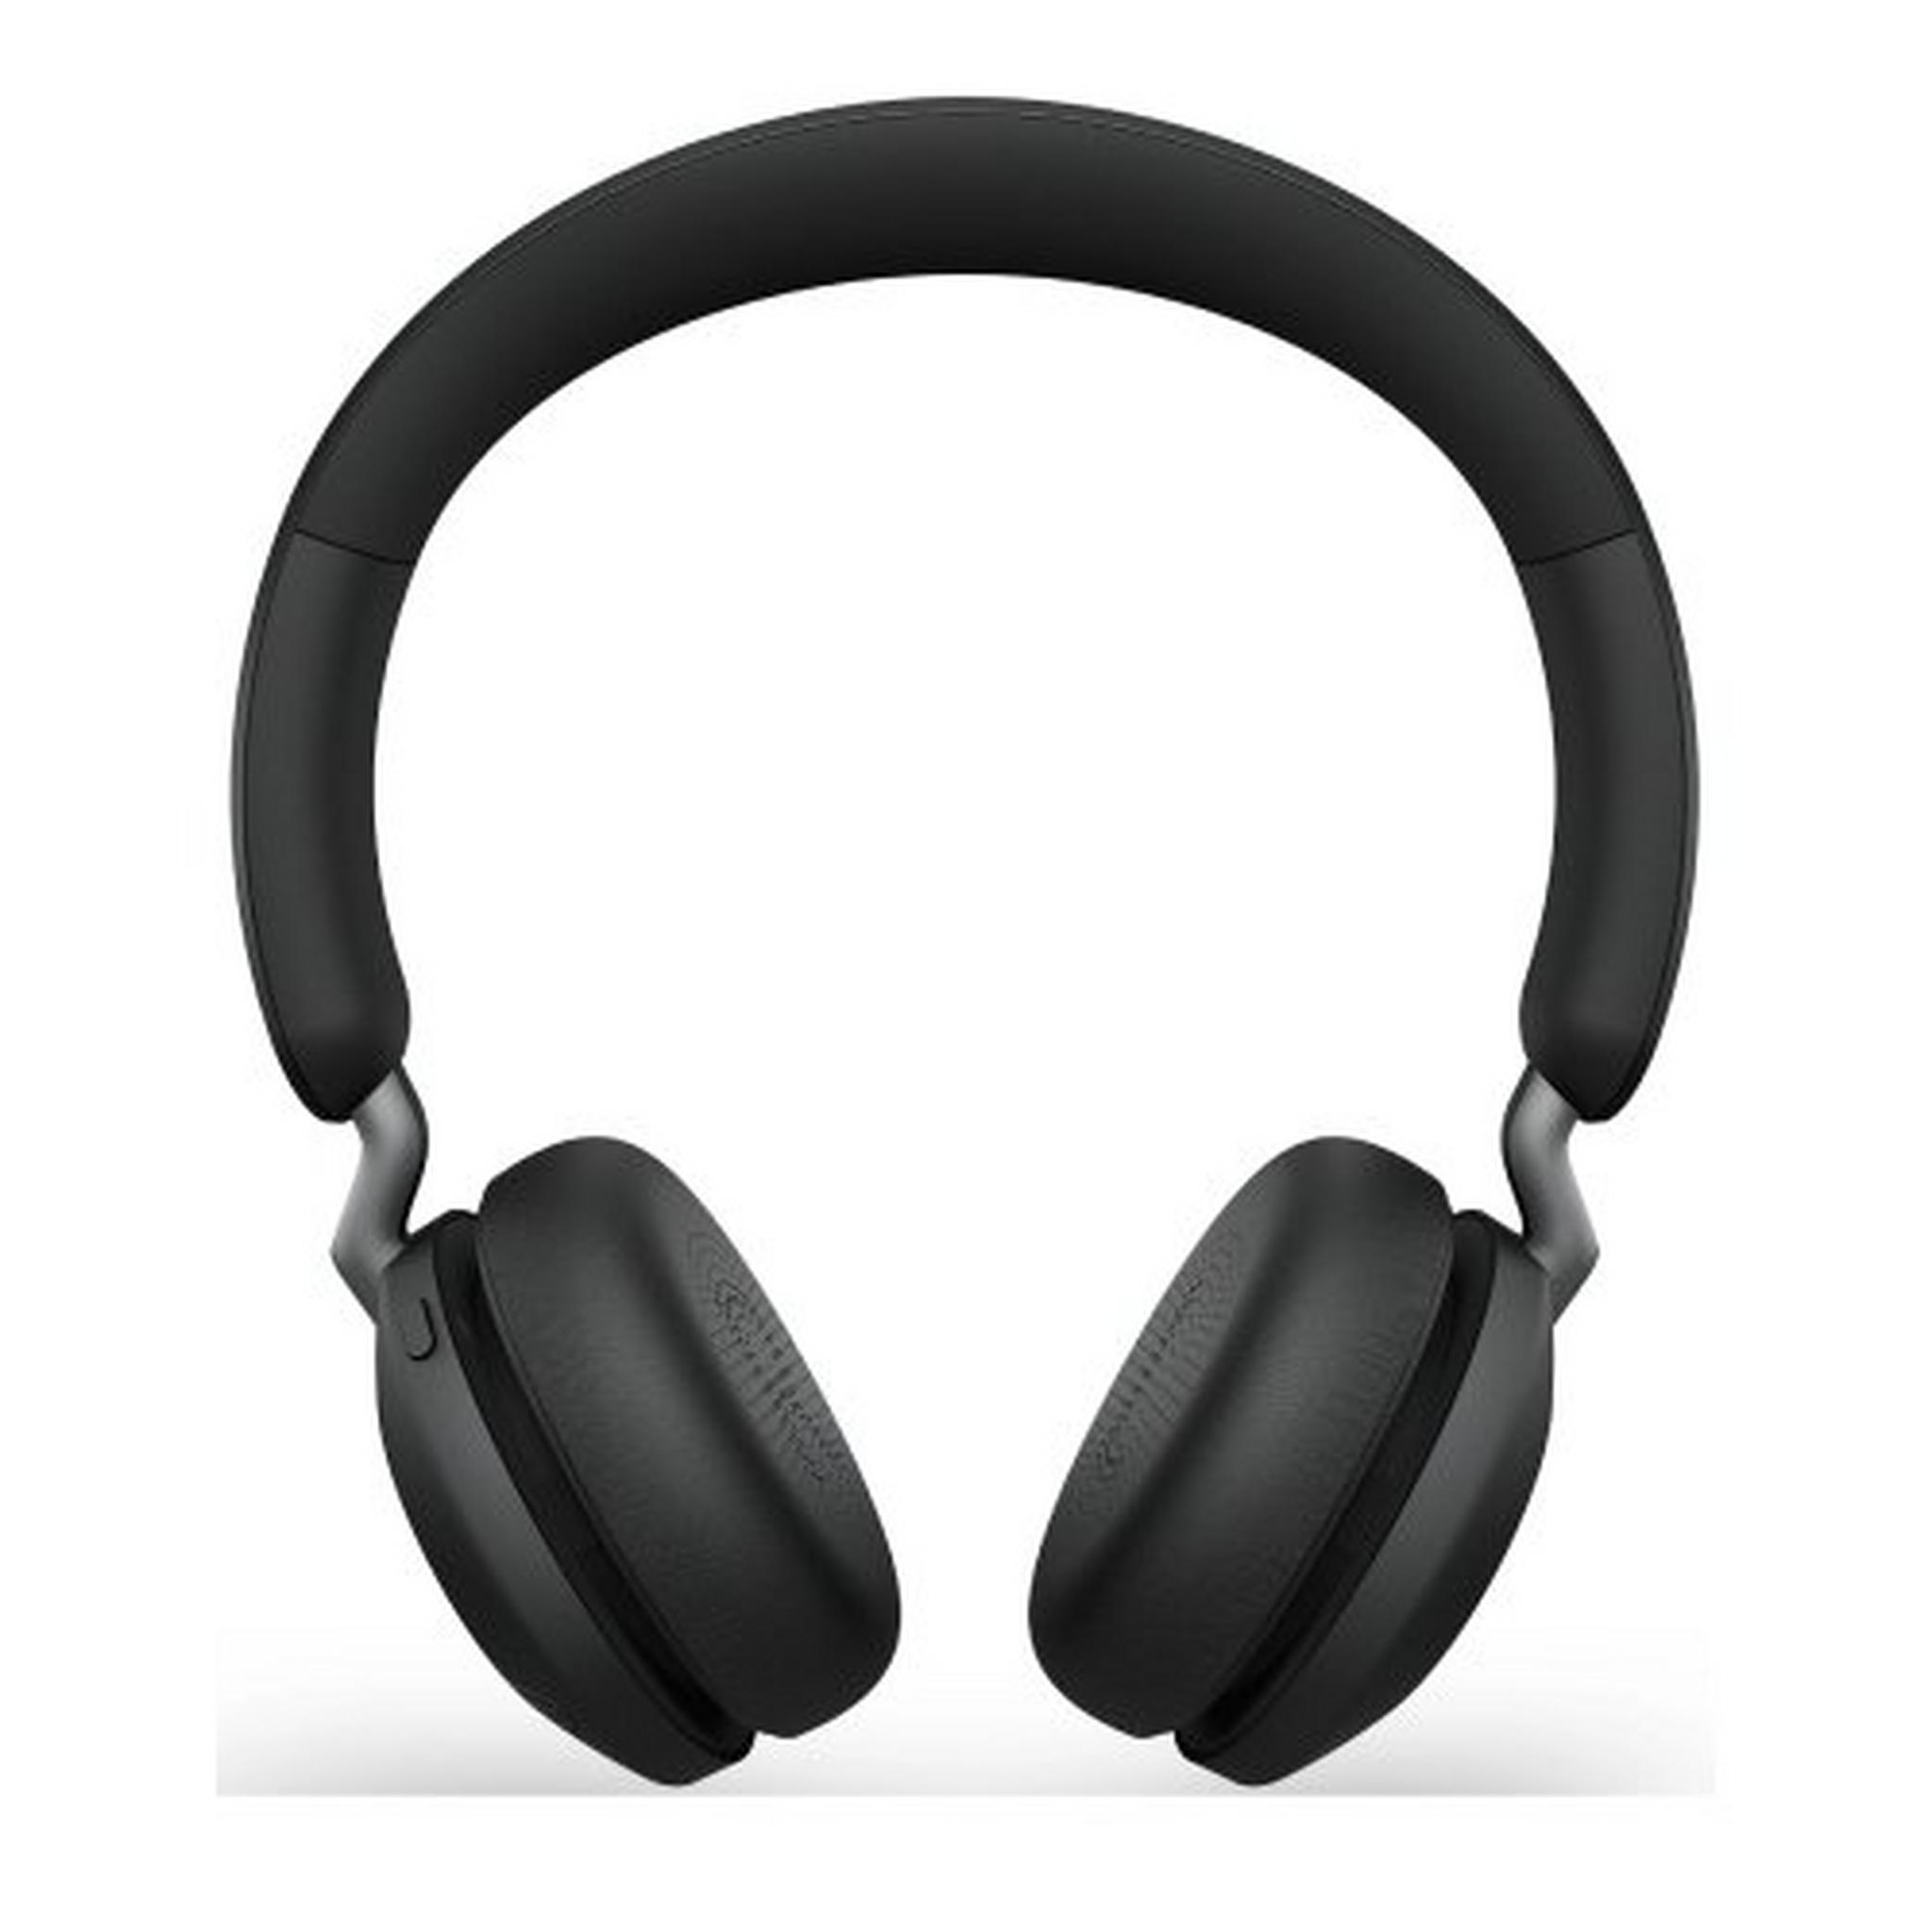 Jabra Elite 45h Wireless Headphones - Titanium Black